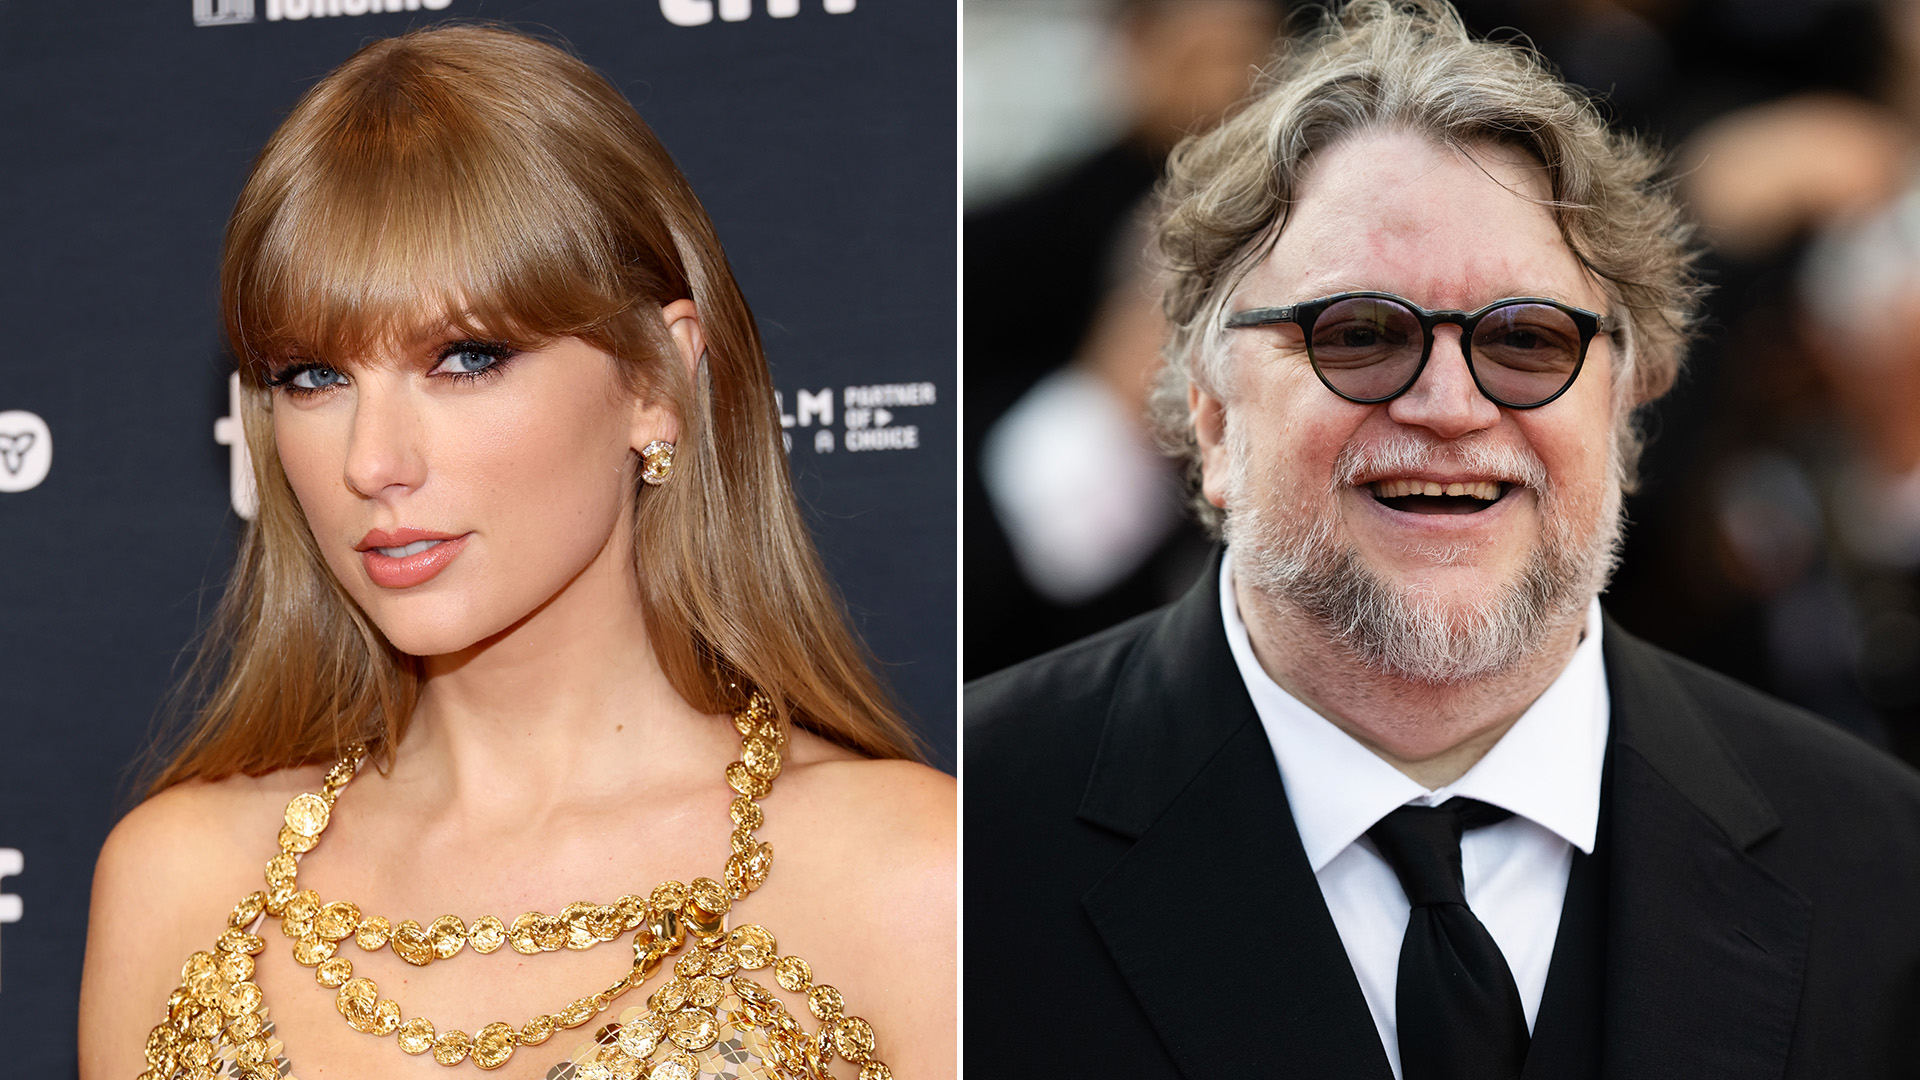 “Un día con su mente sería fascinante”: Taylor Swift aseguró que le gustaría ser como Guillermo del Toro